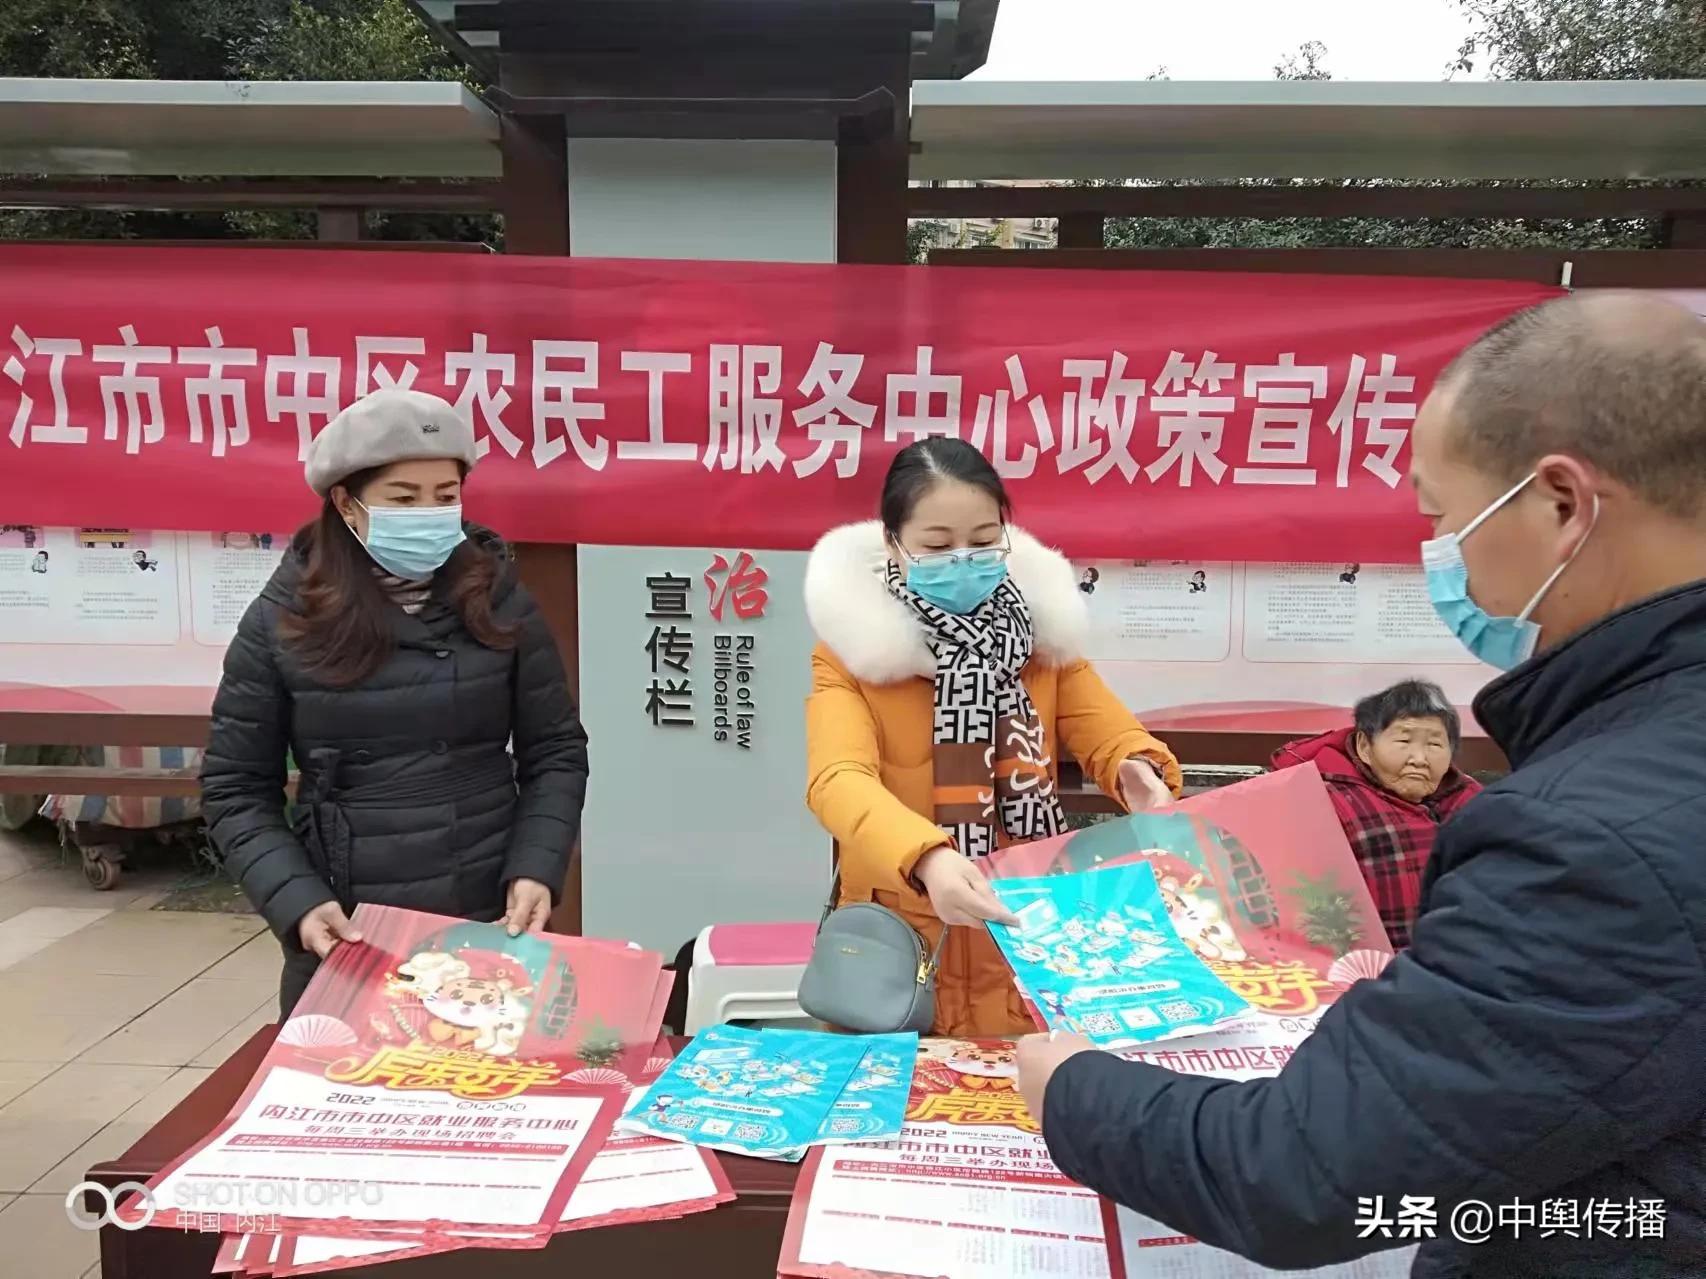 内江市市中区牌楼街道举办“农民工政策”宣传活动